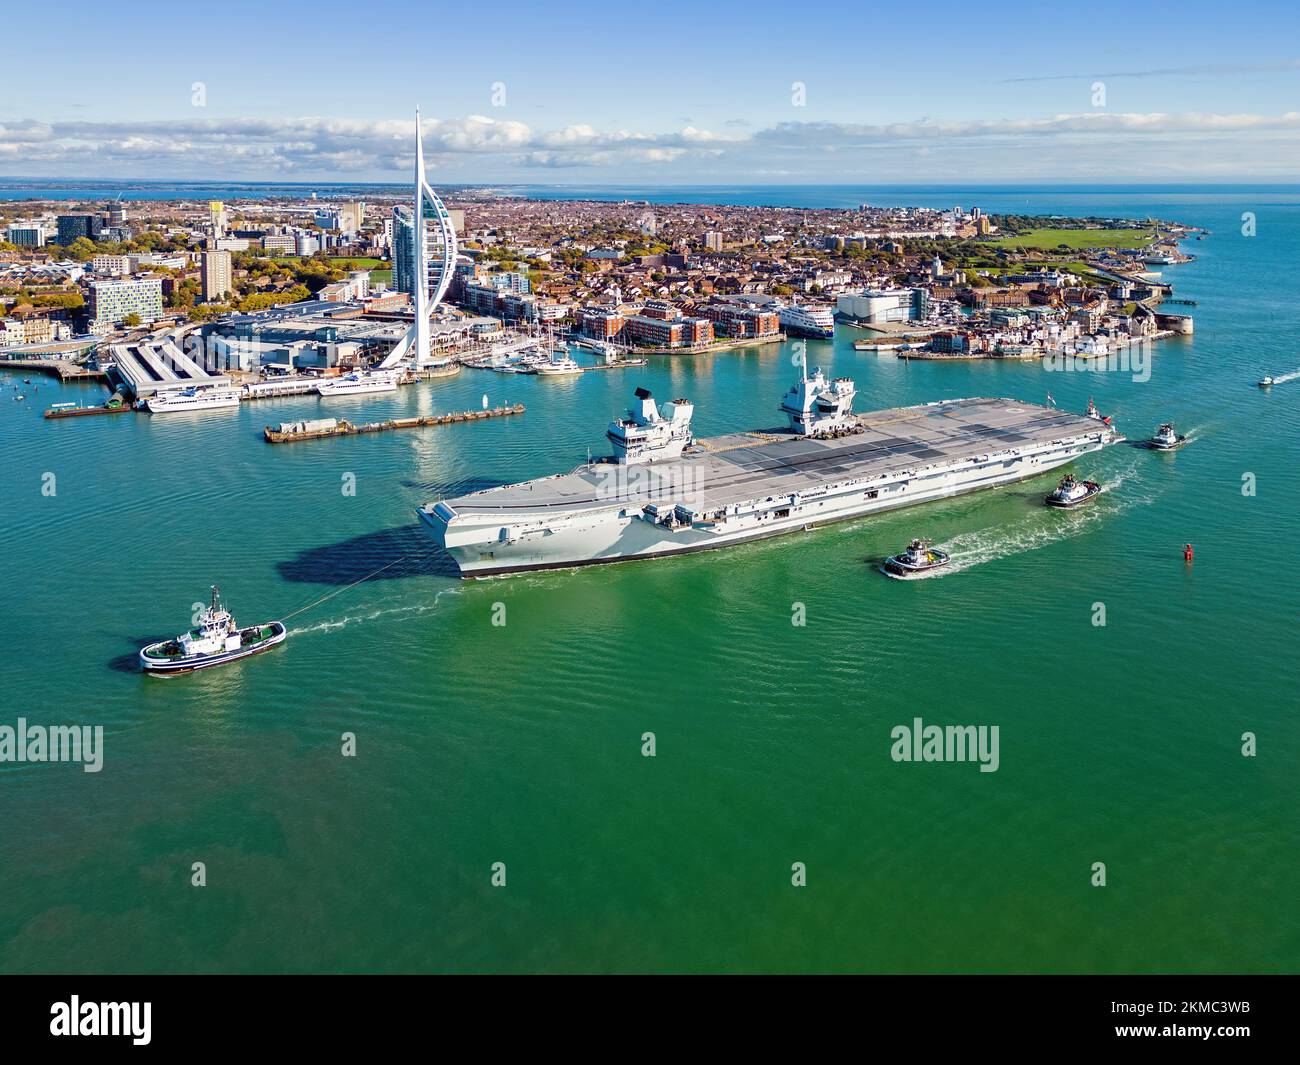 La portaerei della Royal Navy, HMS Queen Elizabeth, entra nel porto di Portsmouth. Foto Stock